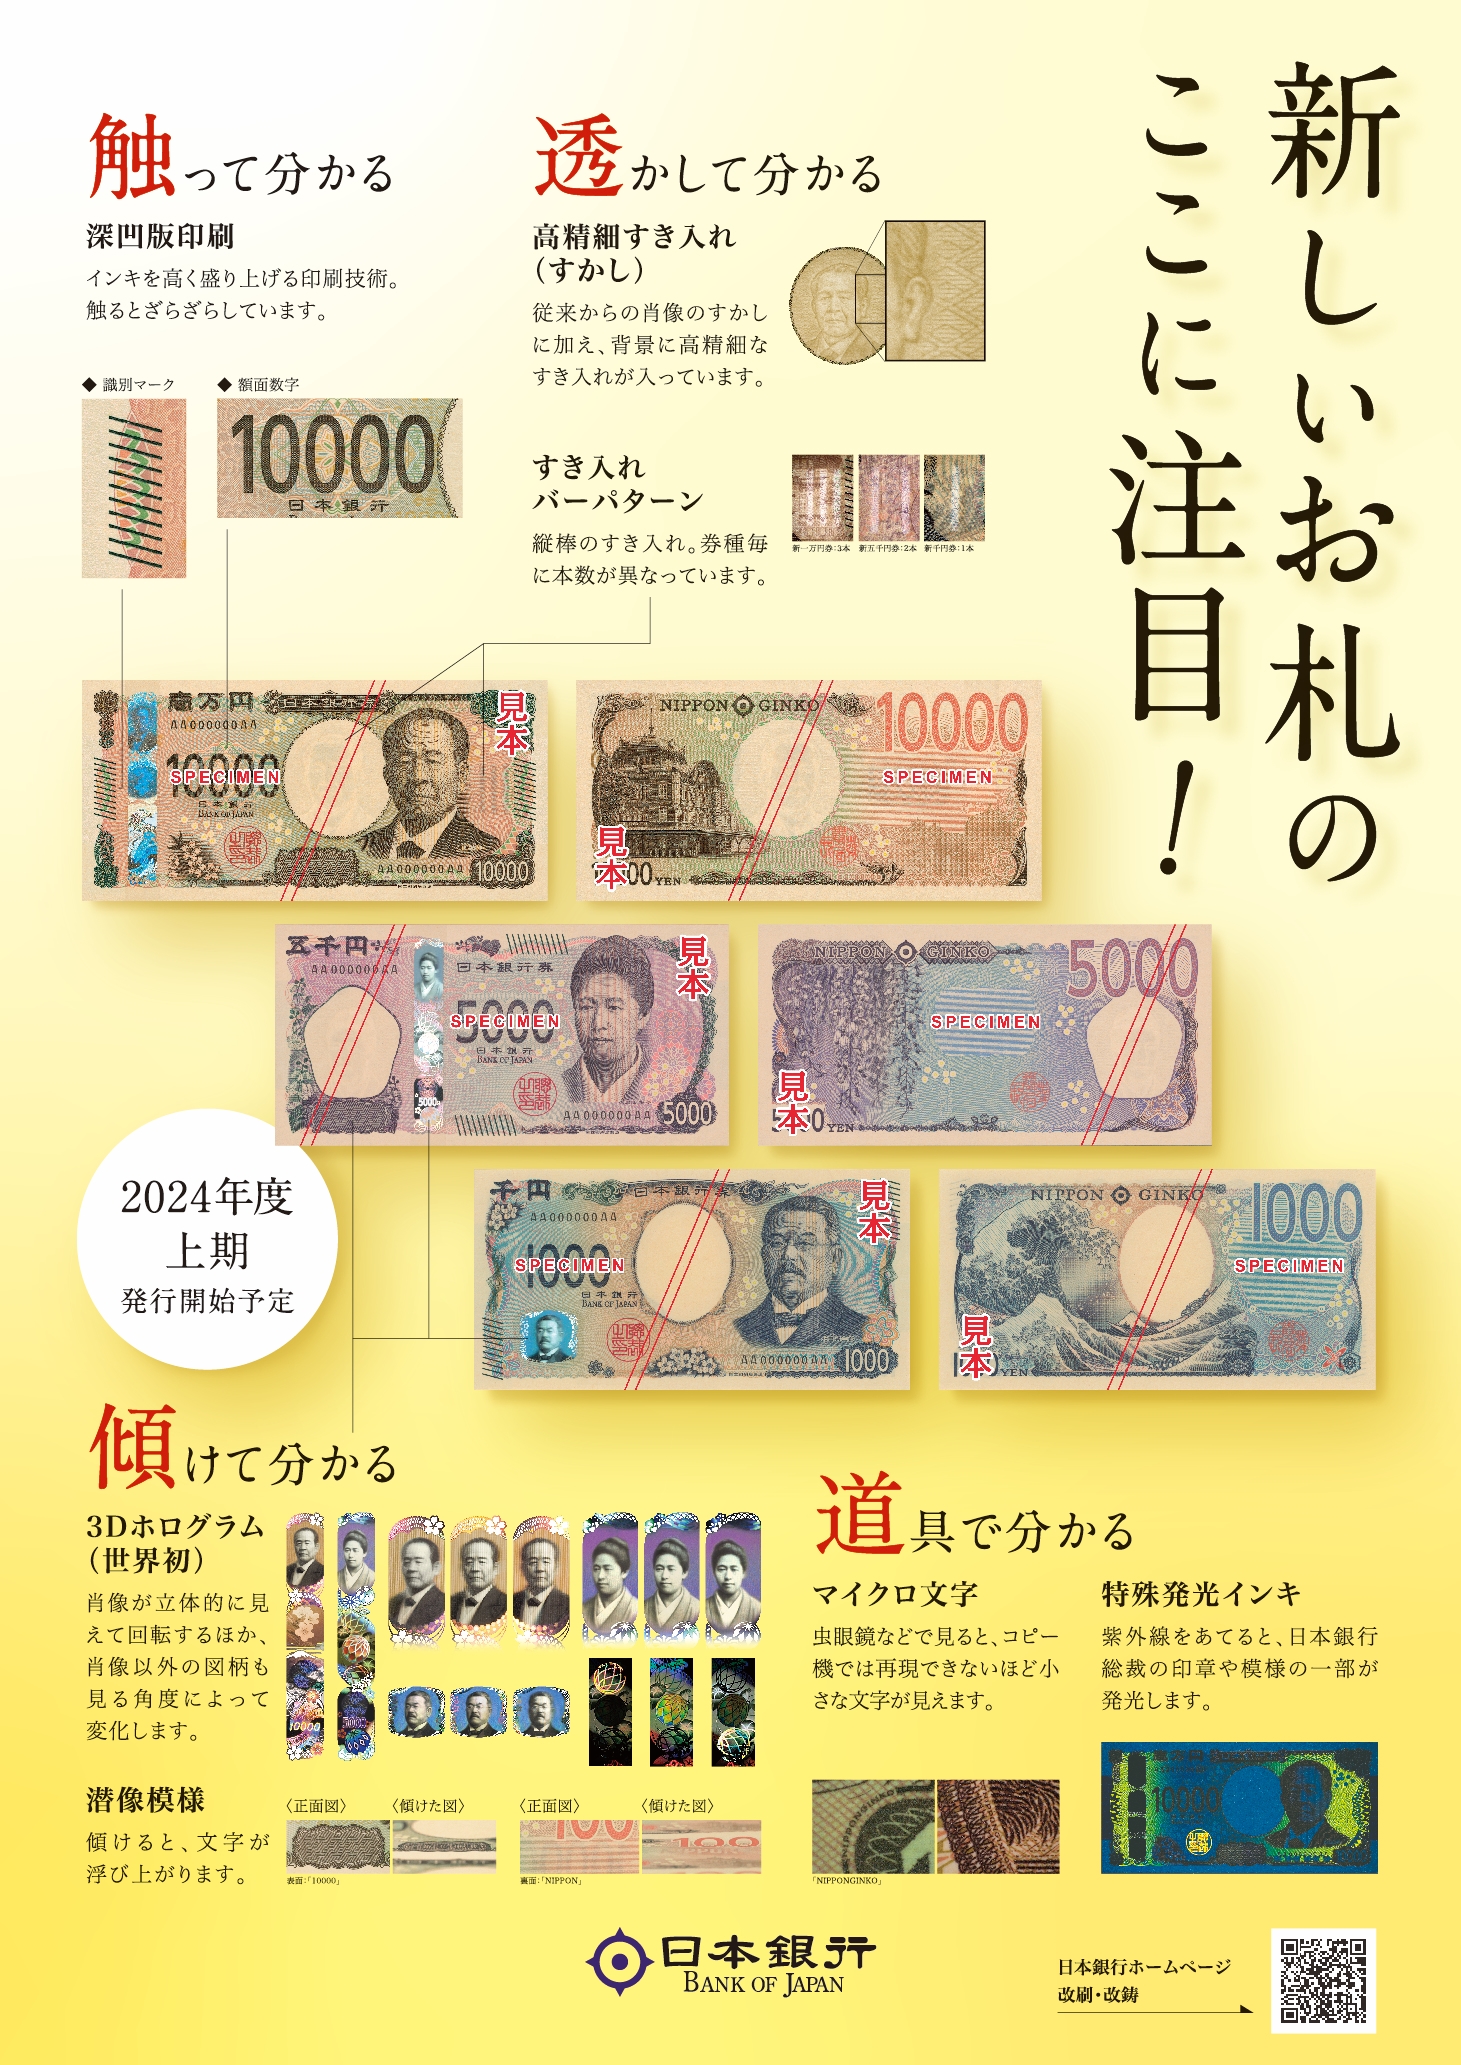 新しい日本銀行券の発行や偽造防止技術などについて紹介するポスターの画像